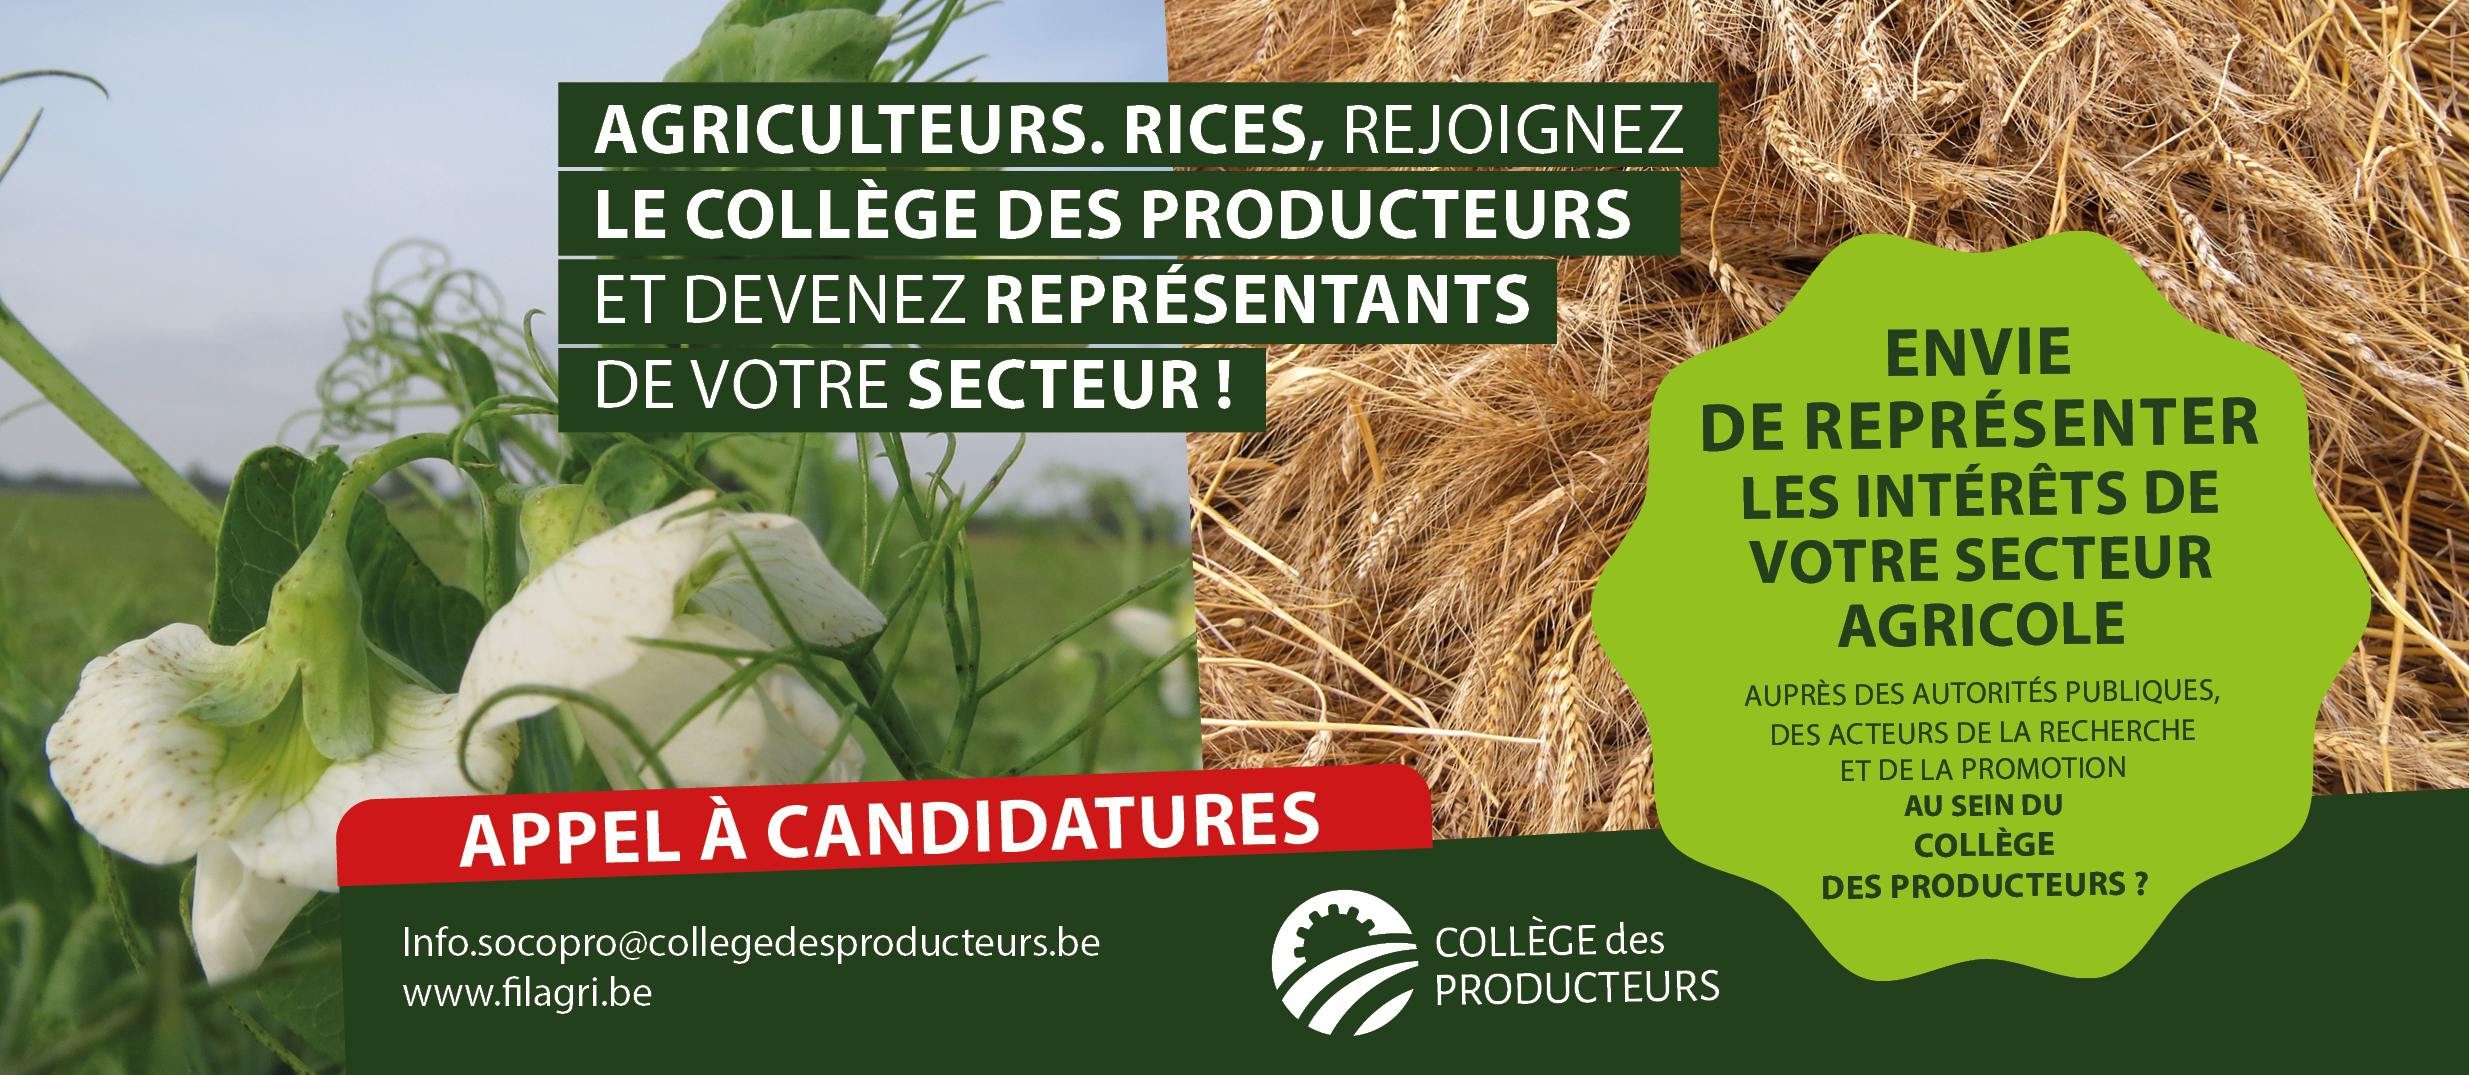 [Elections au Collège des Producteurs] Appel aux producteurs Grandes cultures : représentez votre secteur au sein du Collège des Producteurs !